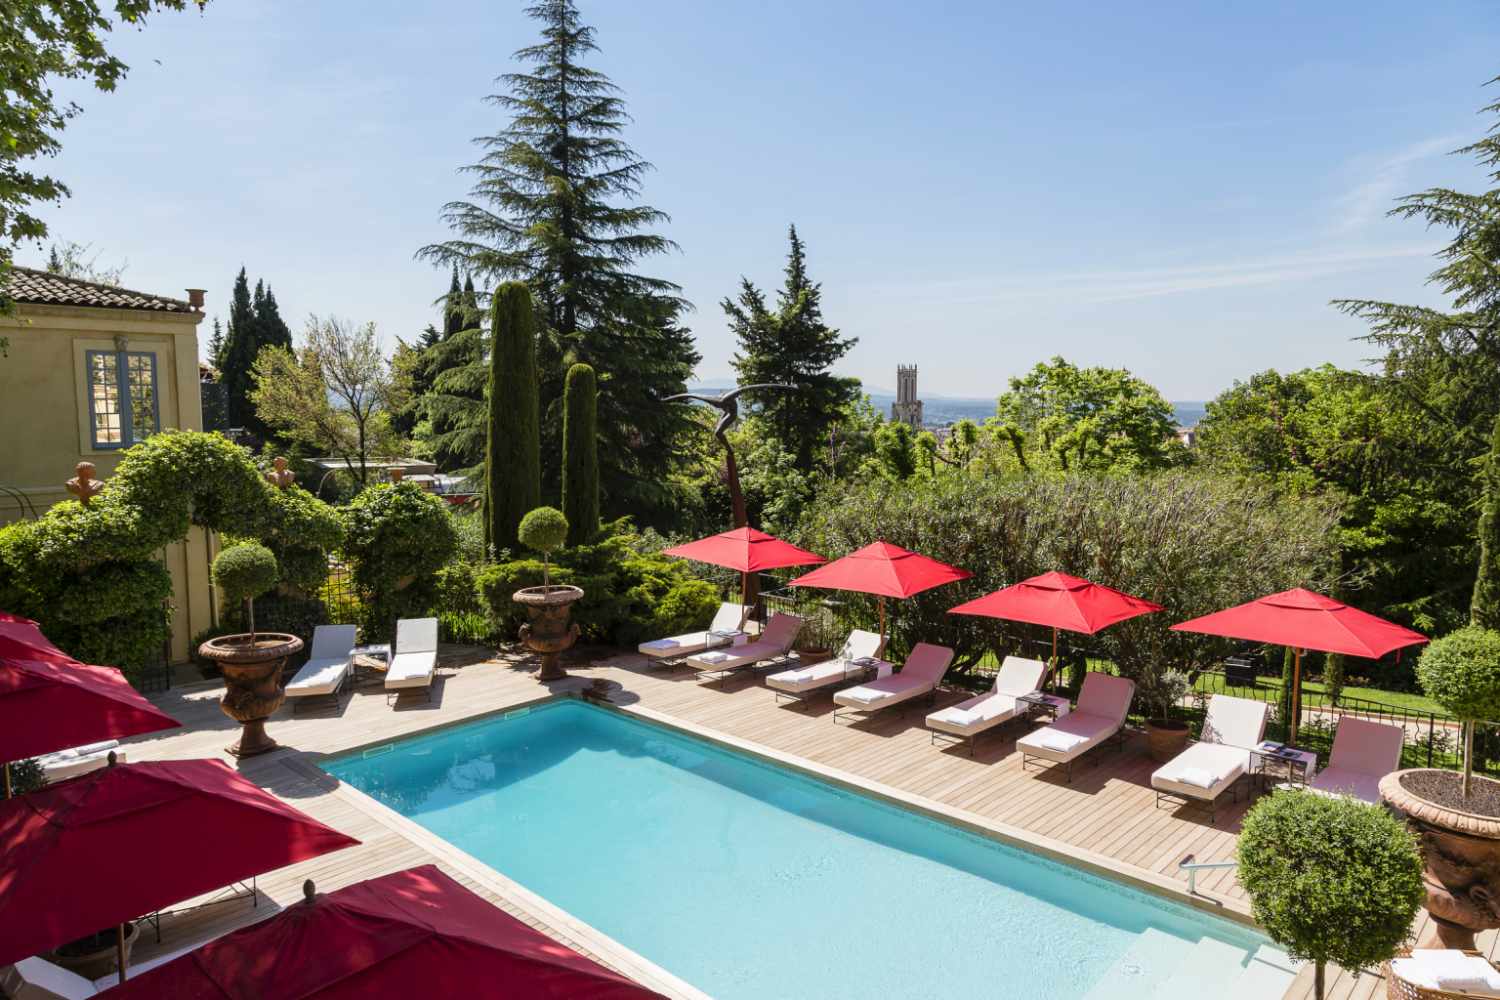 Villa Gallici Hotel & Spa Aix En Provence, Provence - France